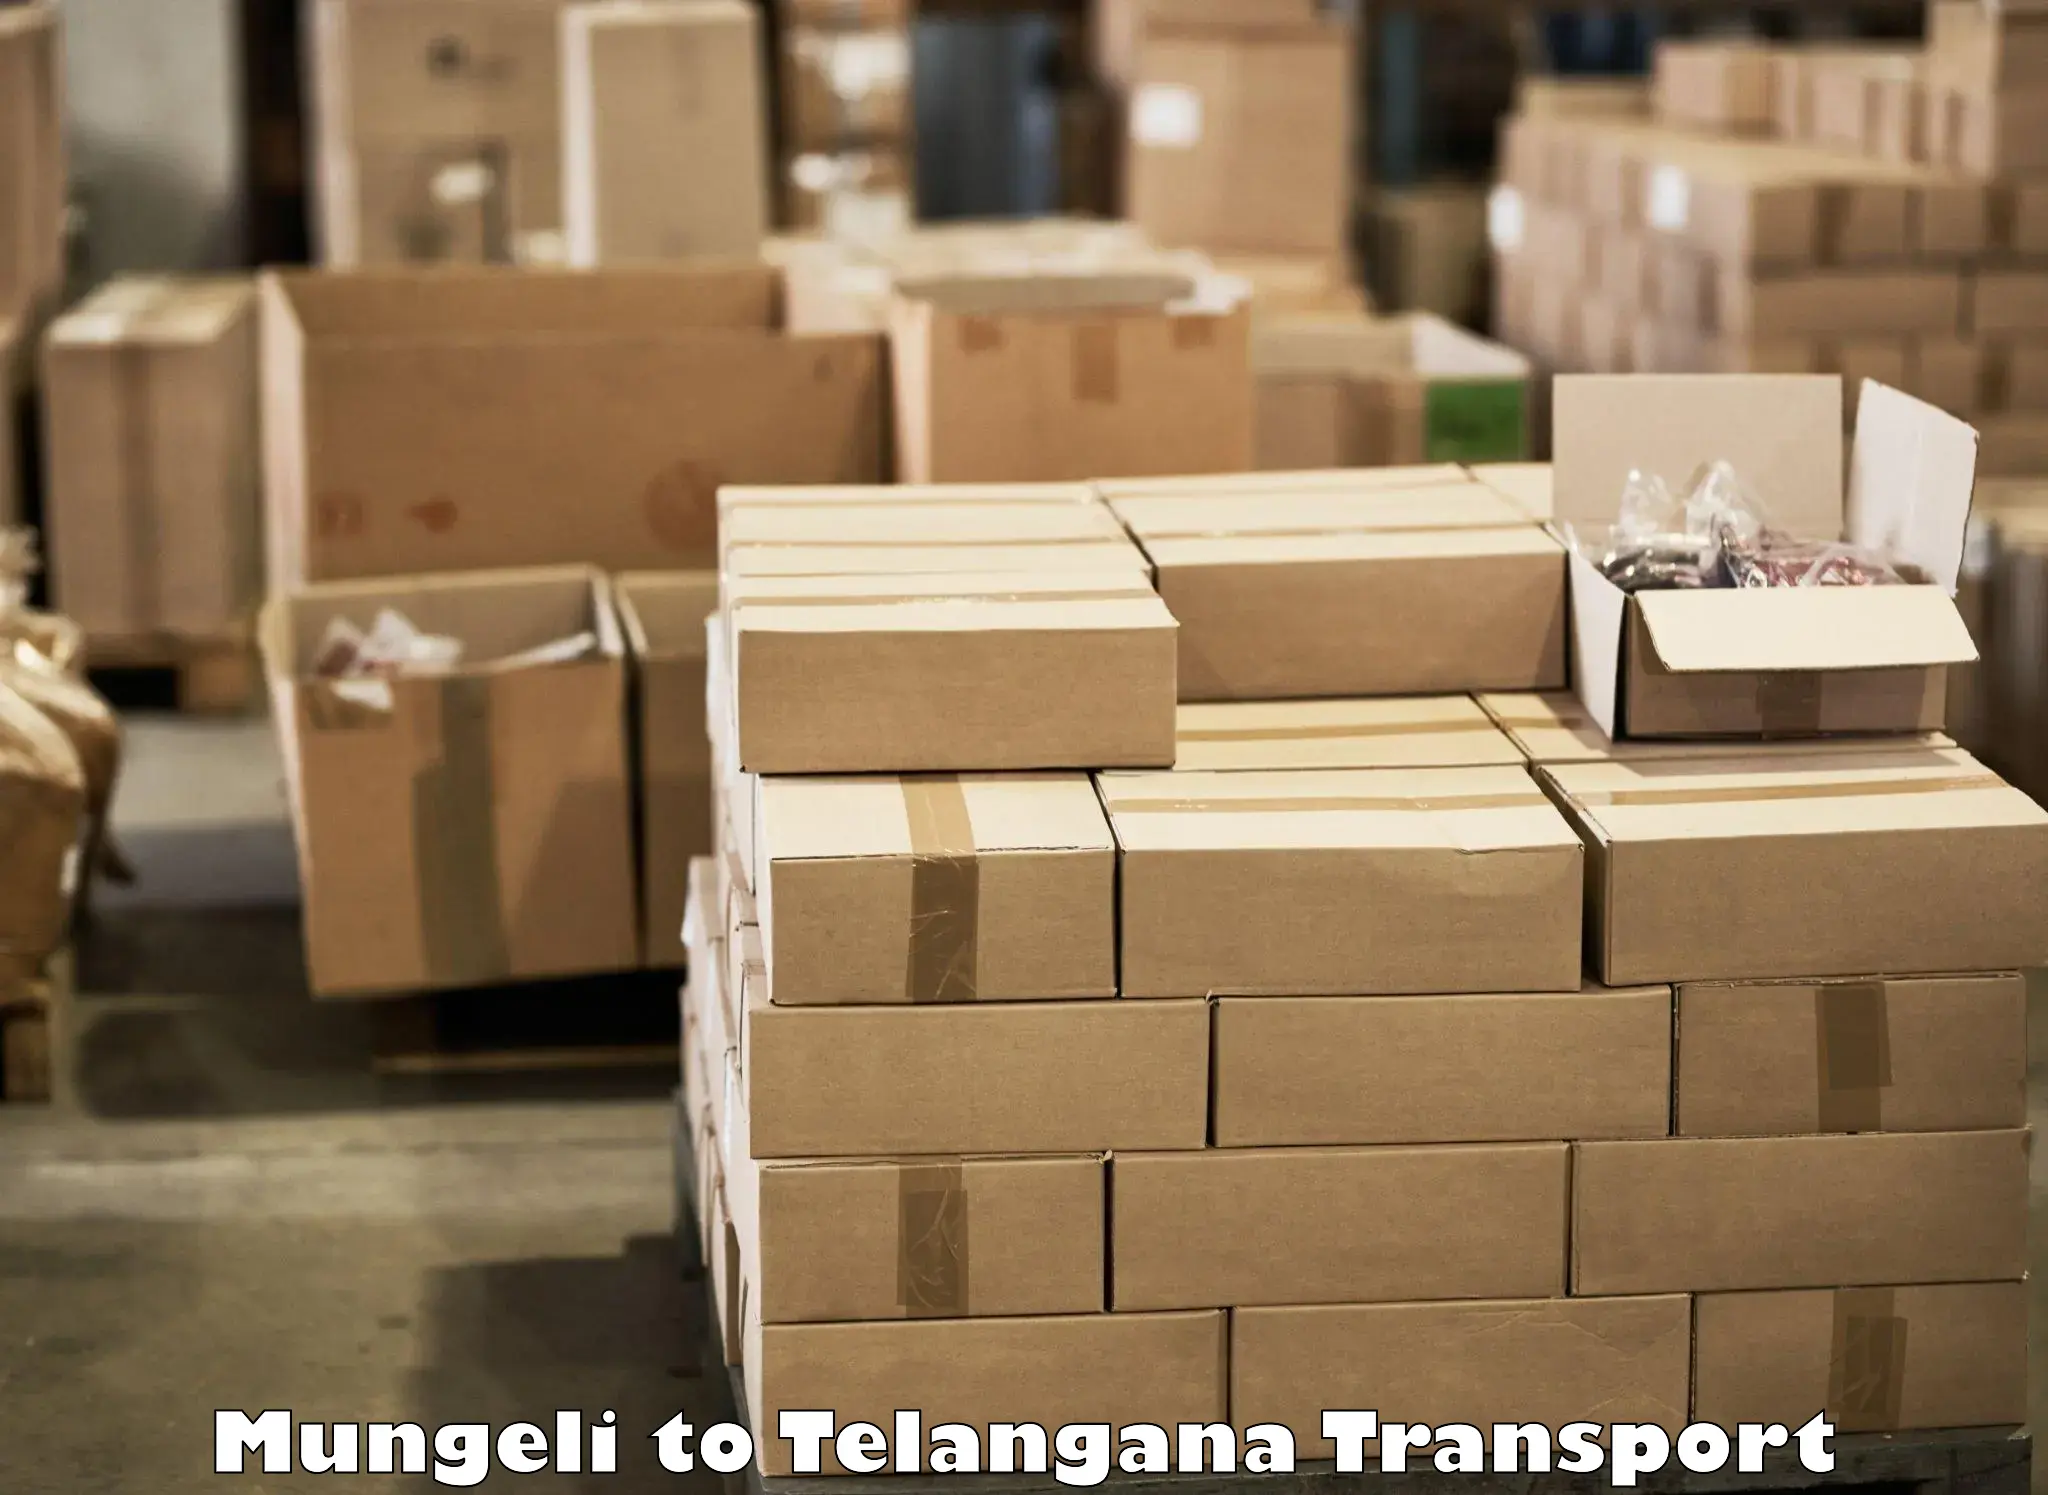 Daily transport service Mungeli to Chennur